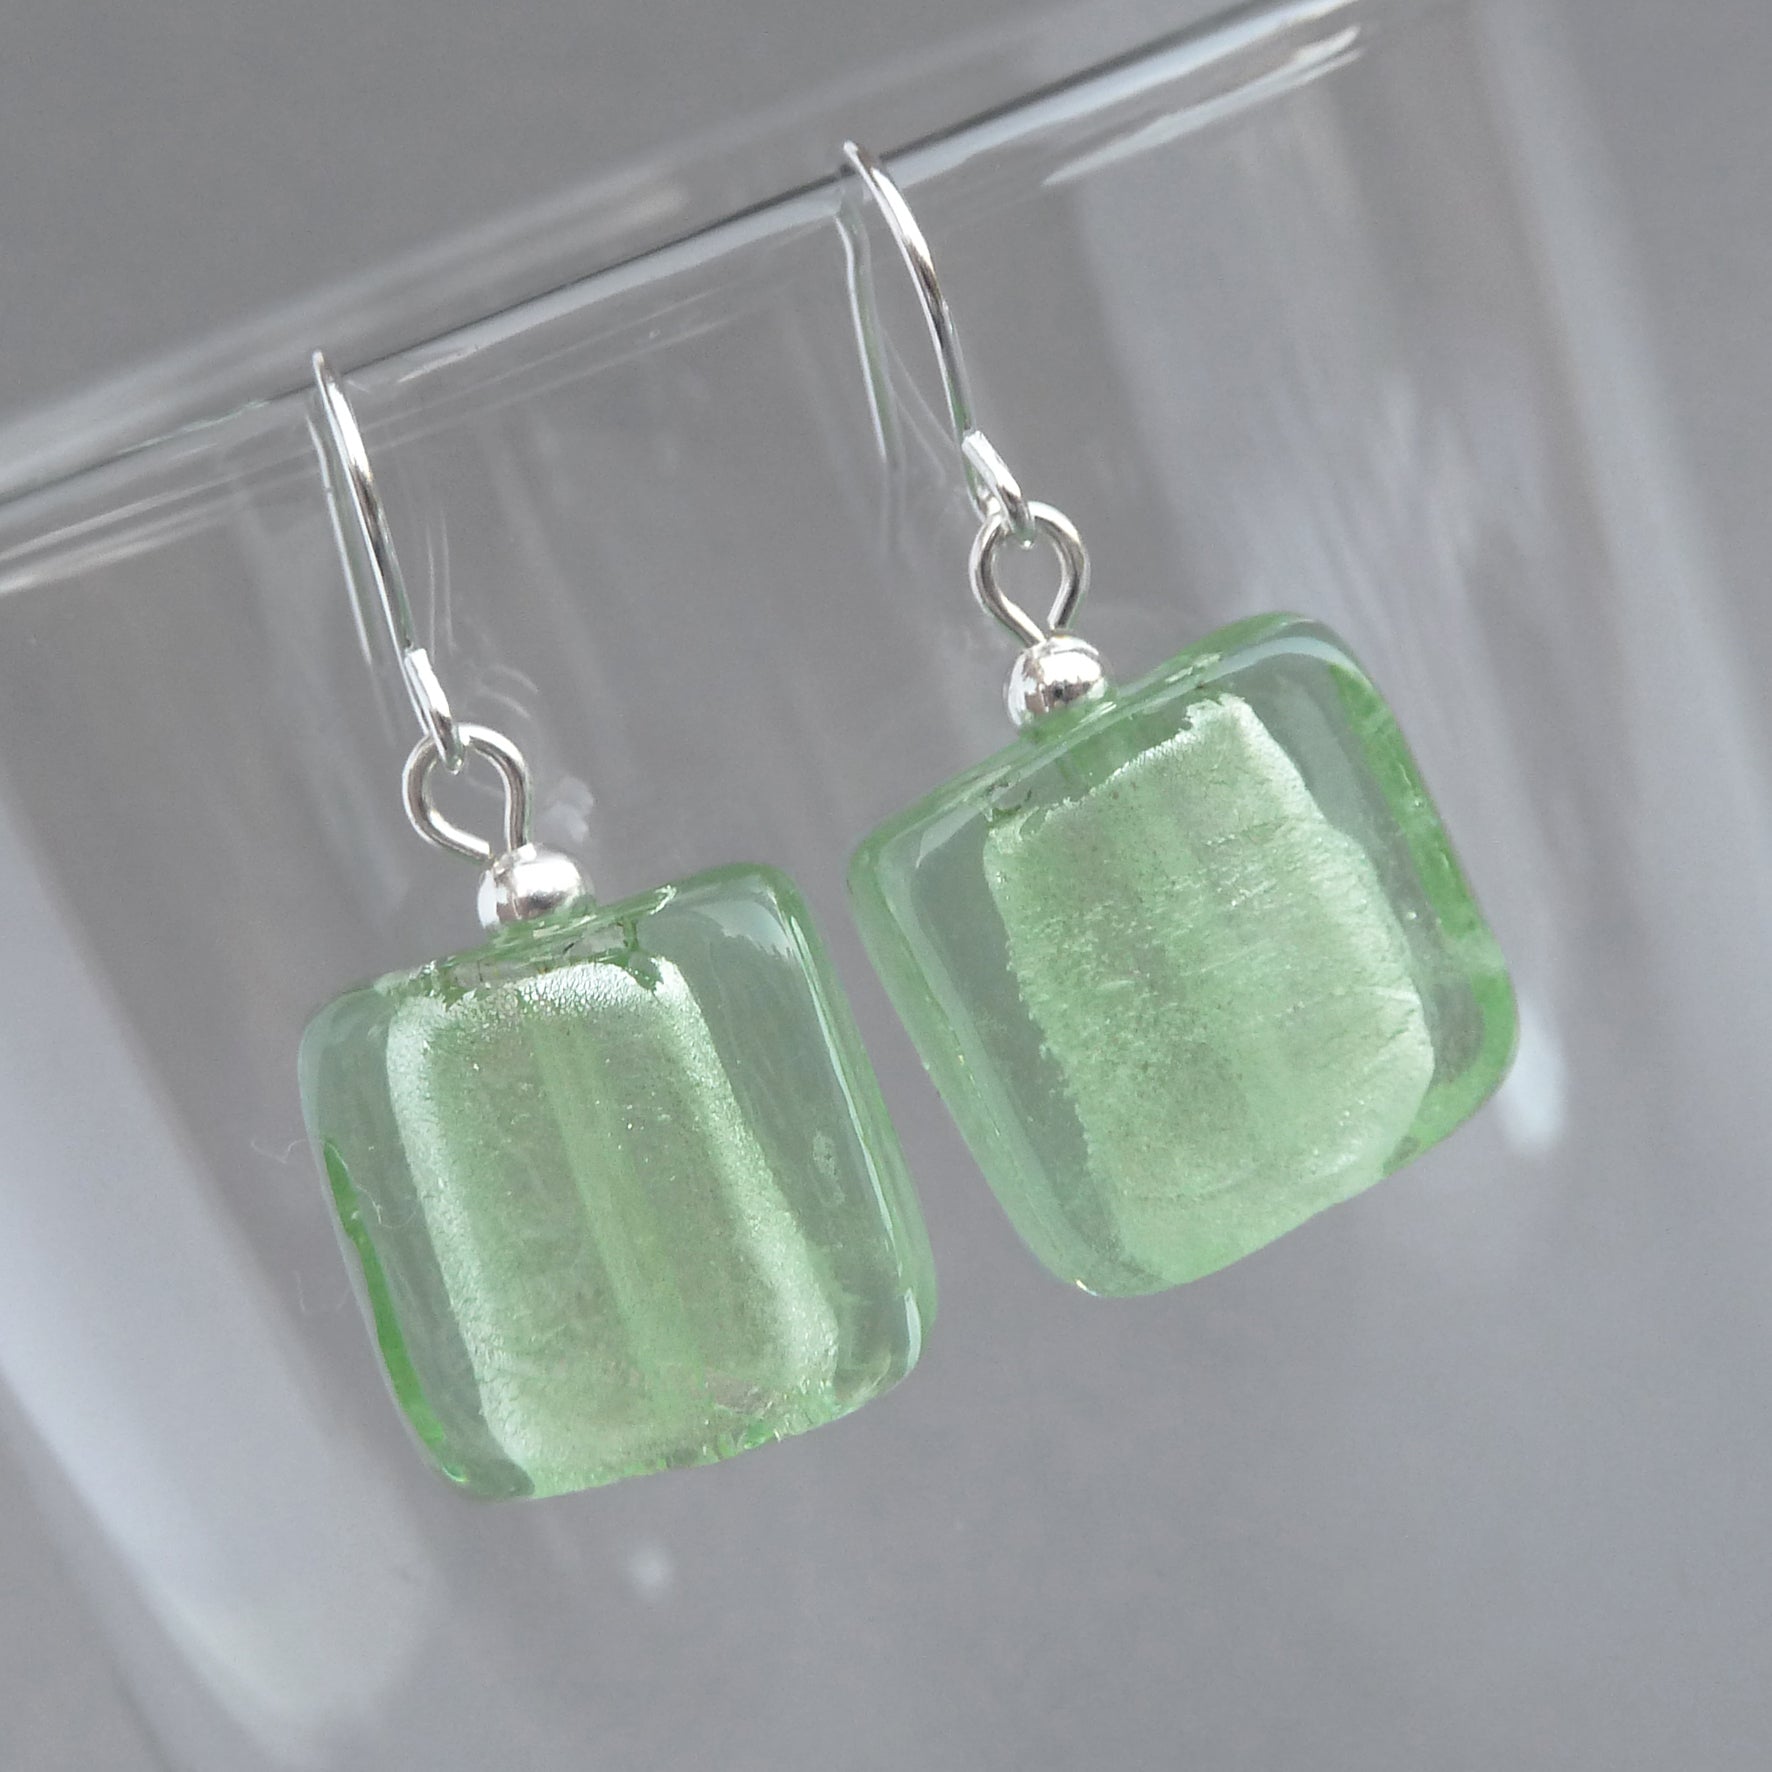 Light green fused glass earrrings